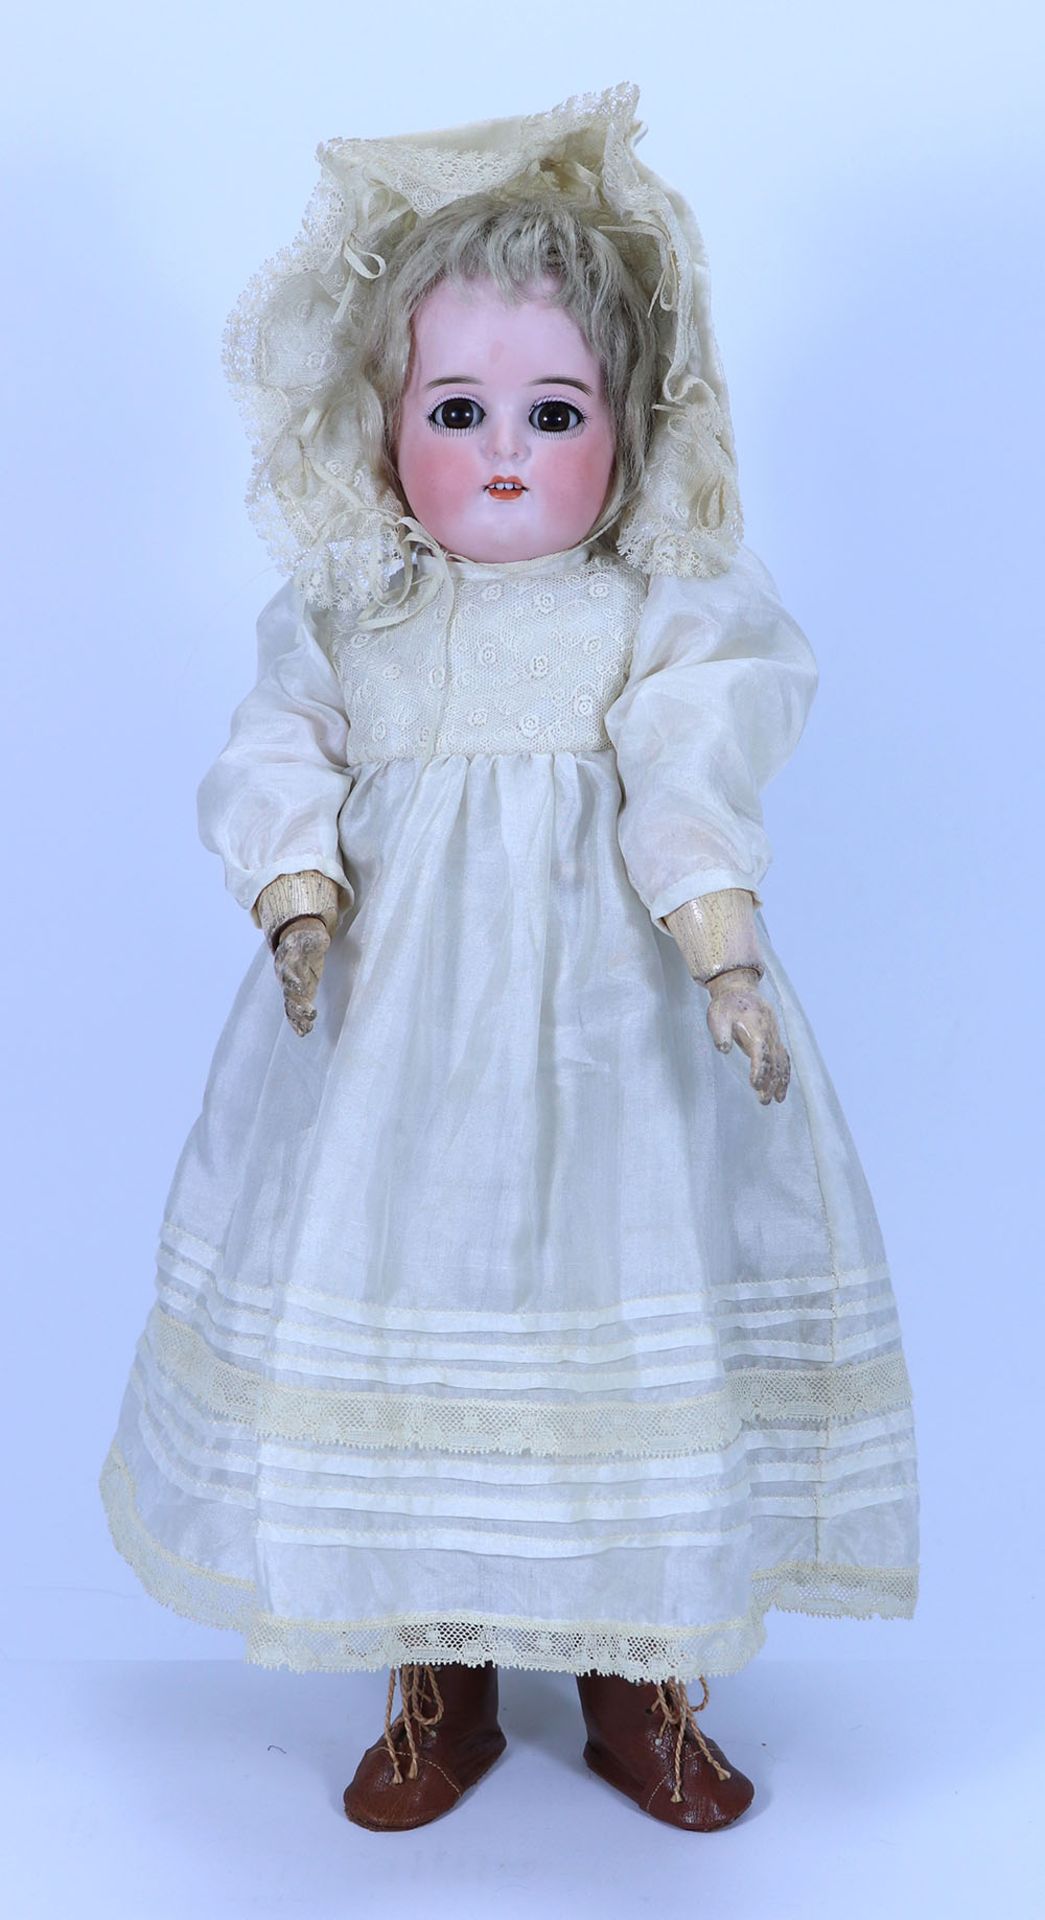 A Kammer & Reinhardt 191 bisque head doll, German circa 1910,